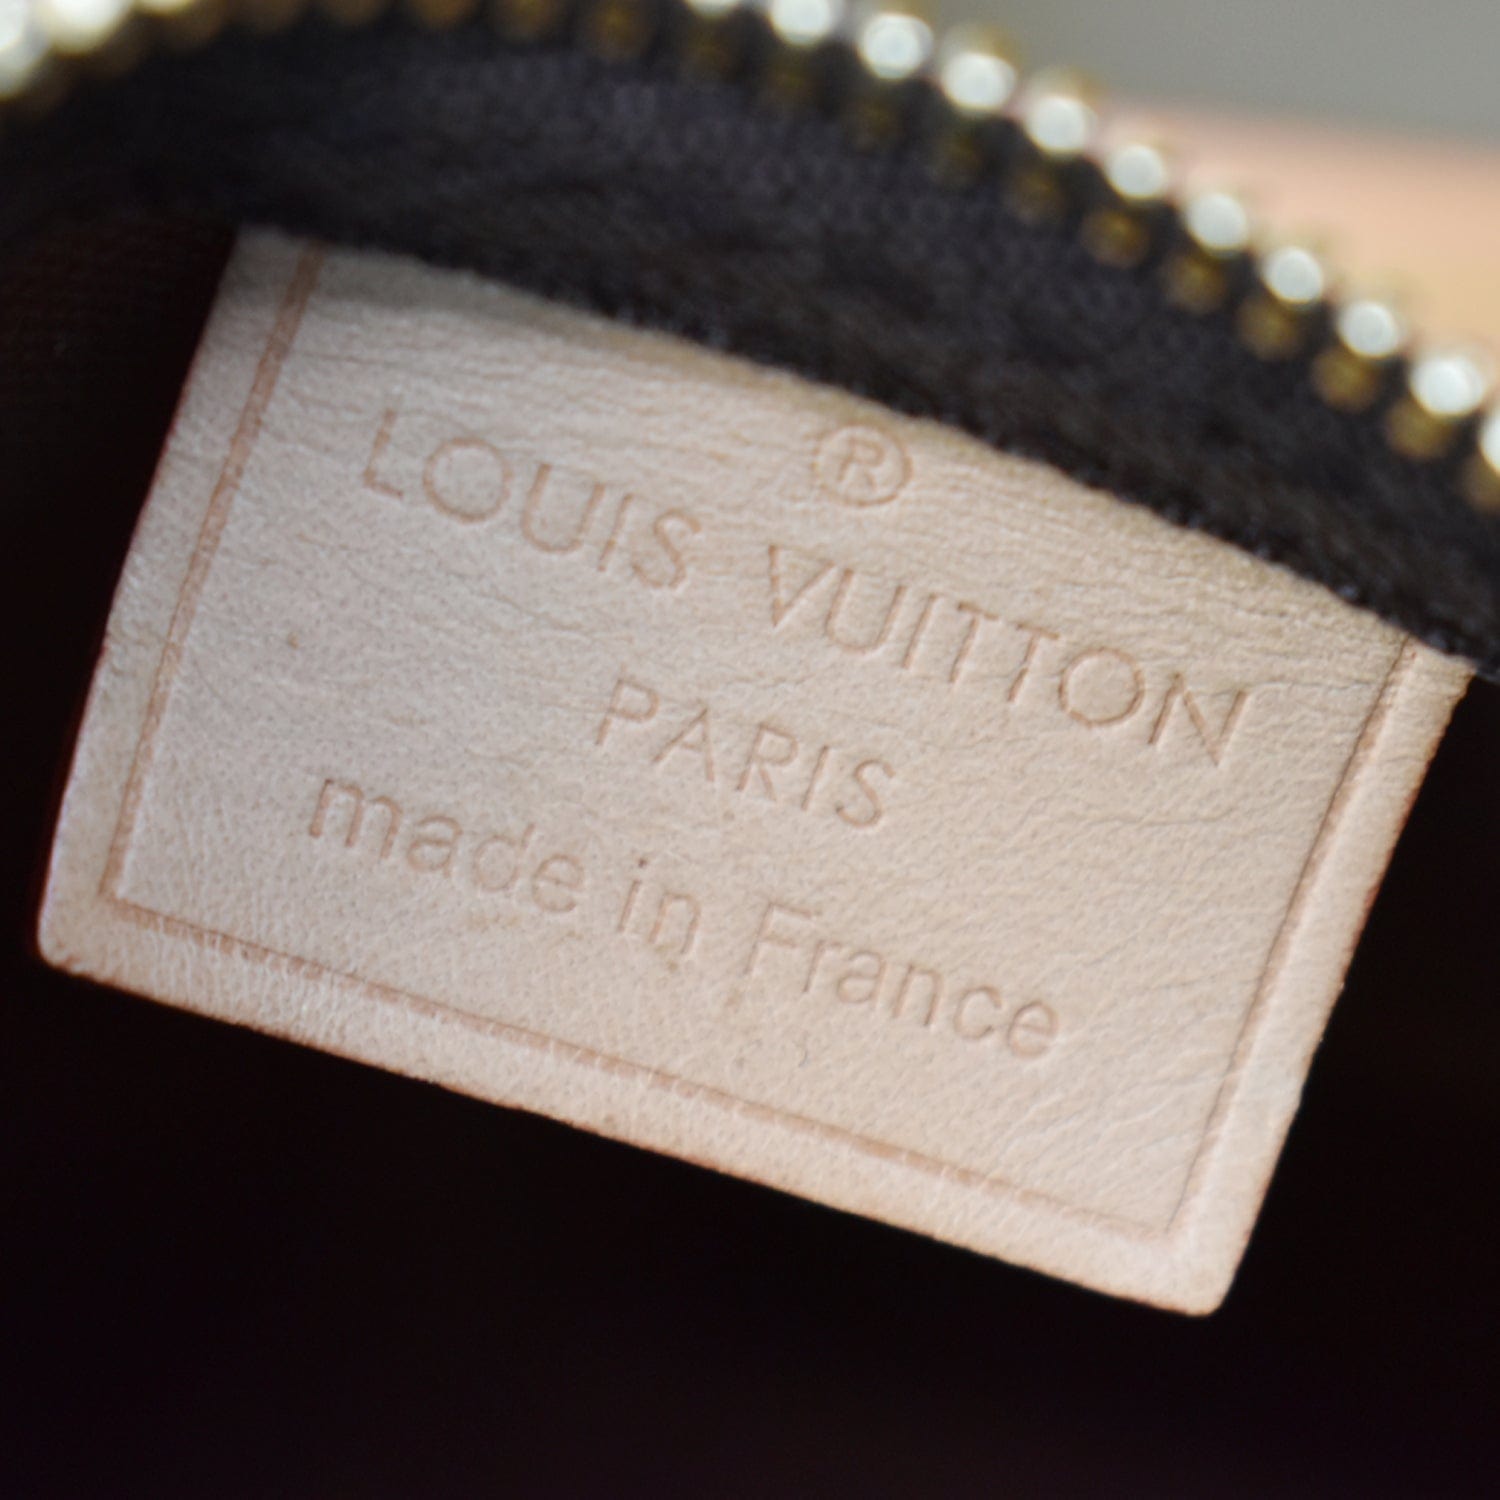 Nano noé cloth crossbody bag Louis Vuitton Brown in Cloth - 23616334